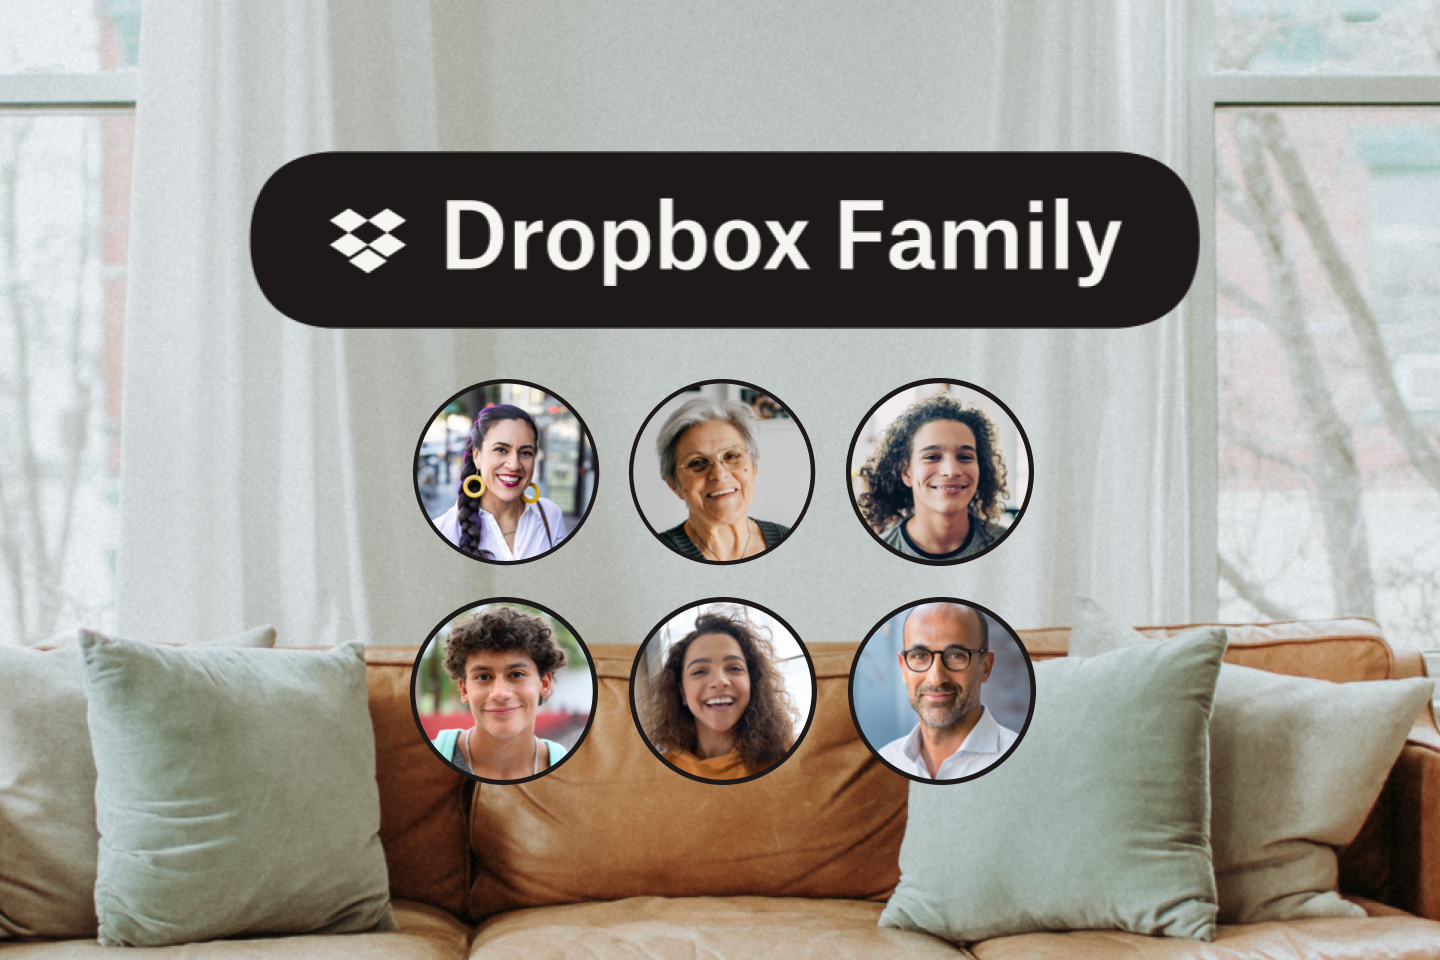 Skórzana kanapa i sześć ikon ze zdjęciami członków rodziny oraz logo Dropbox Family